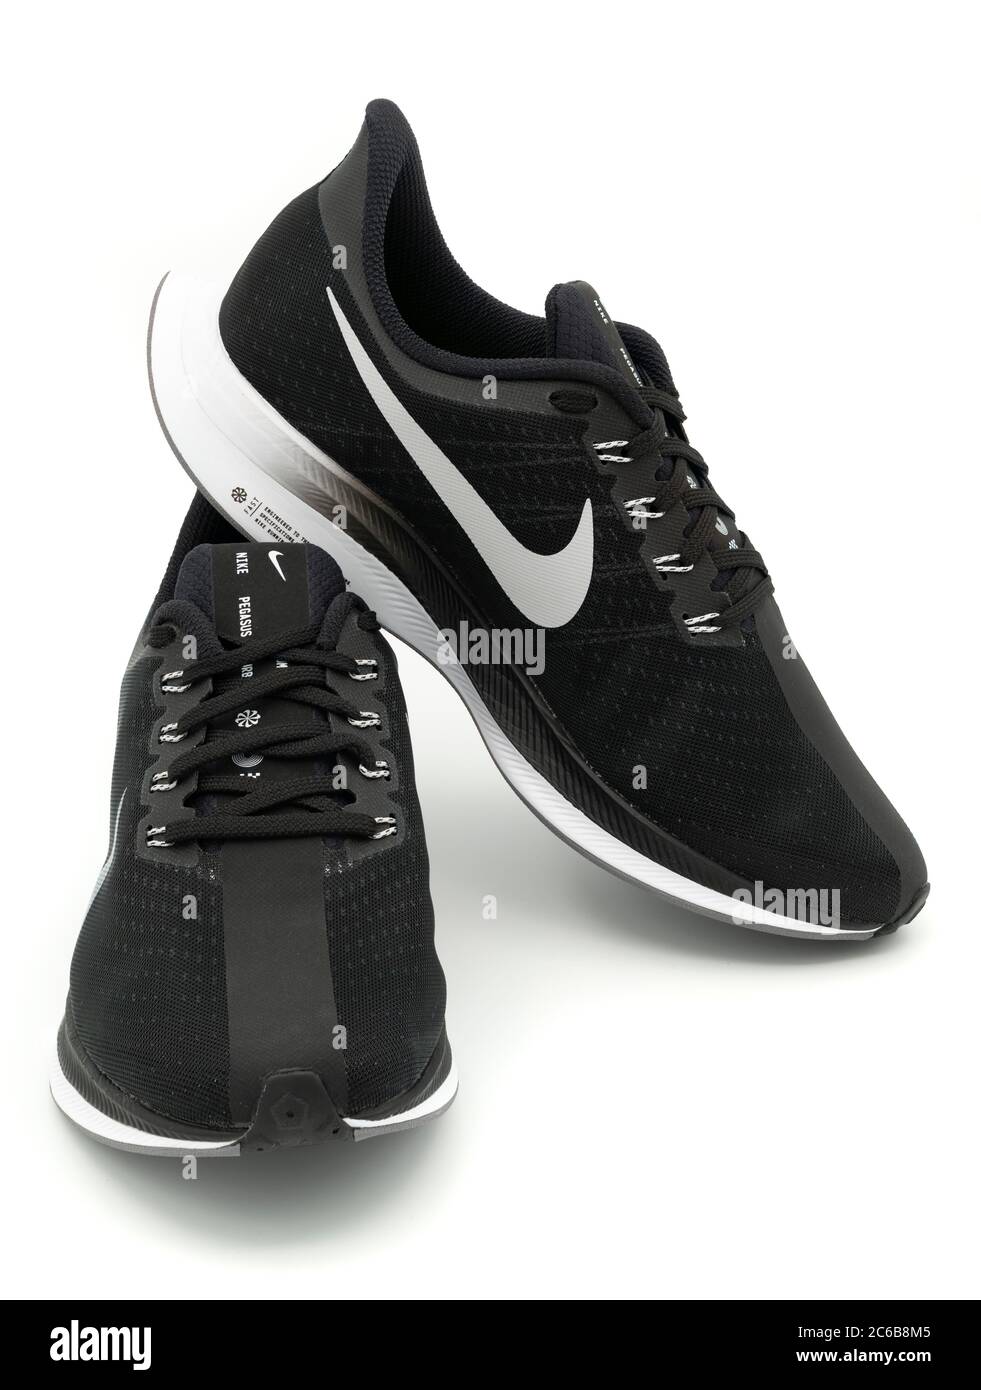 Paio di scarpe da running Nike Pegasus Turbo nere tagliate isolate su sfondo bianco Foto Stock